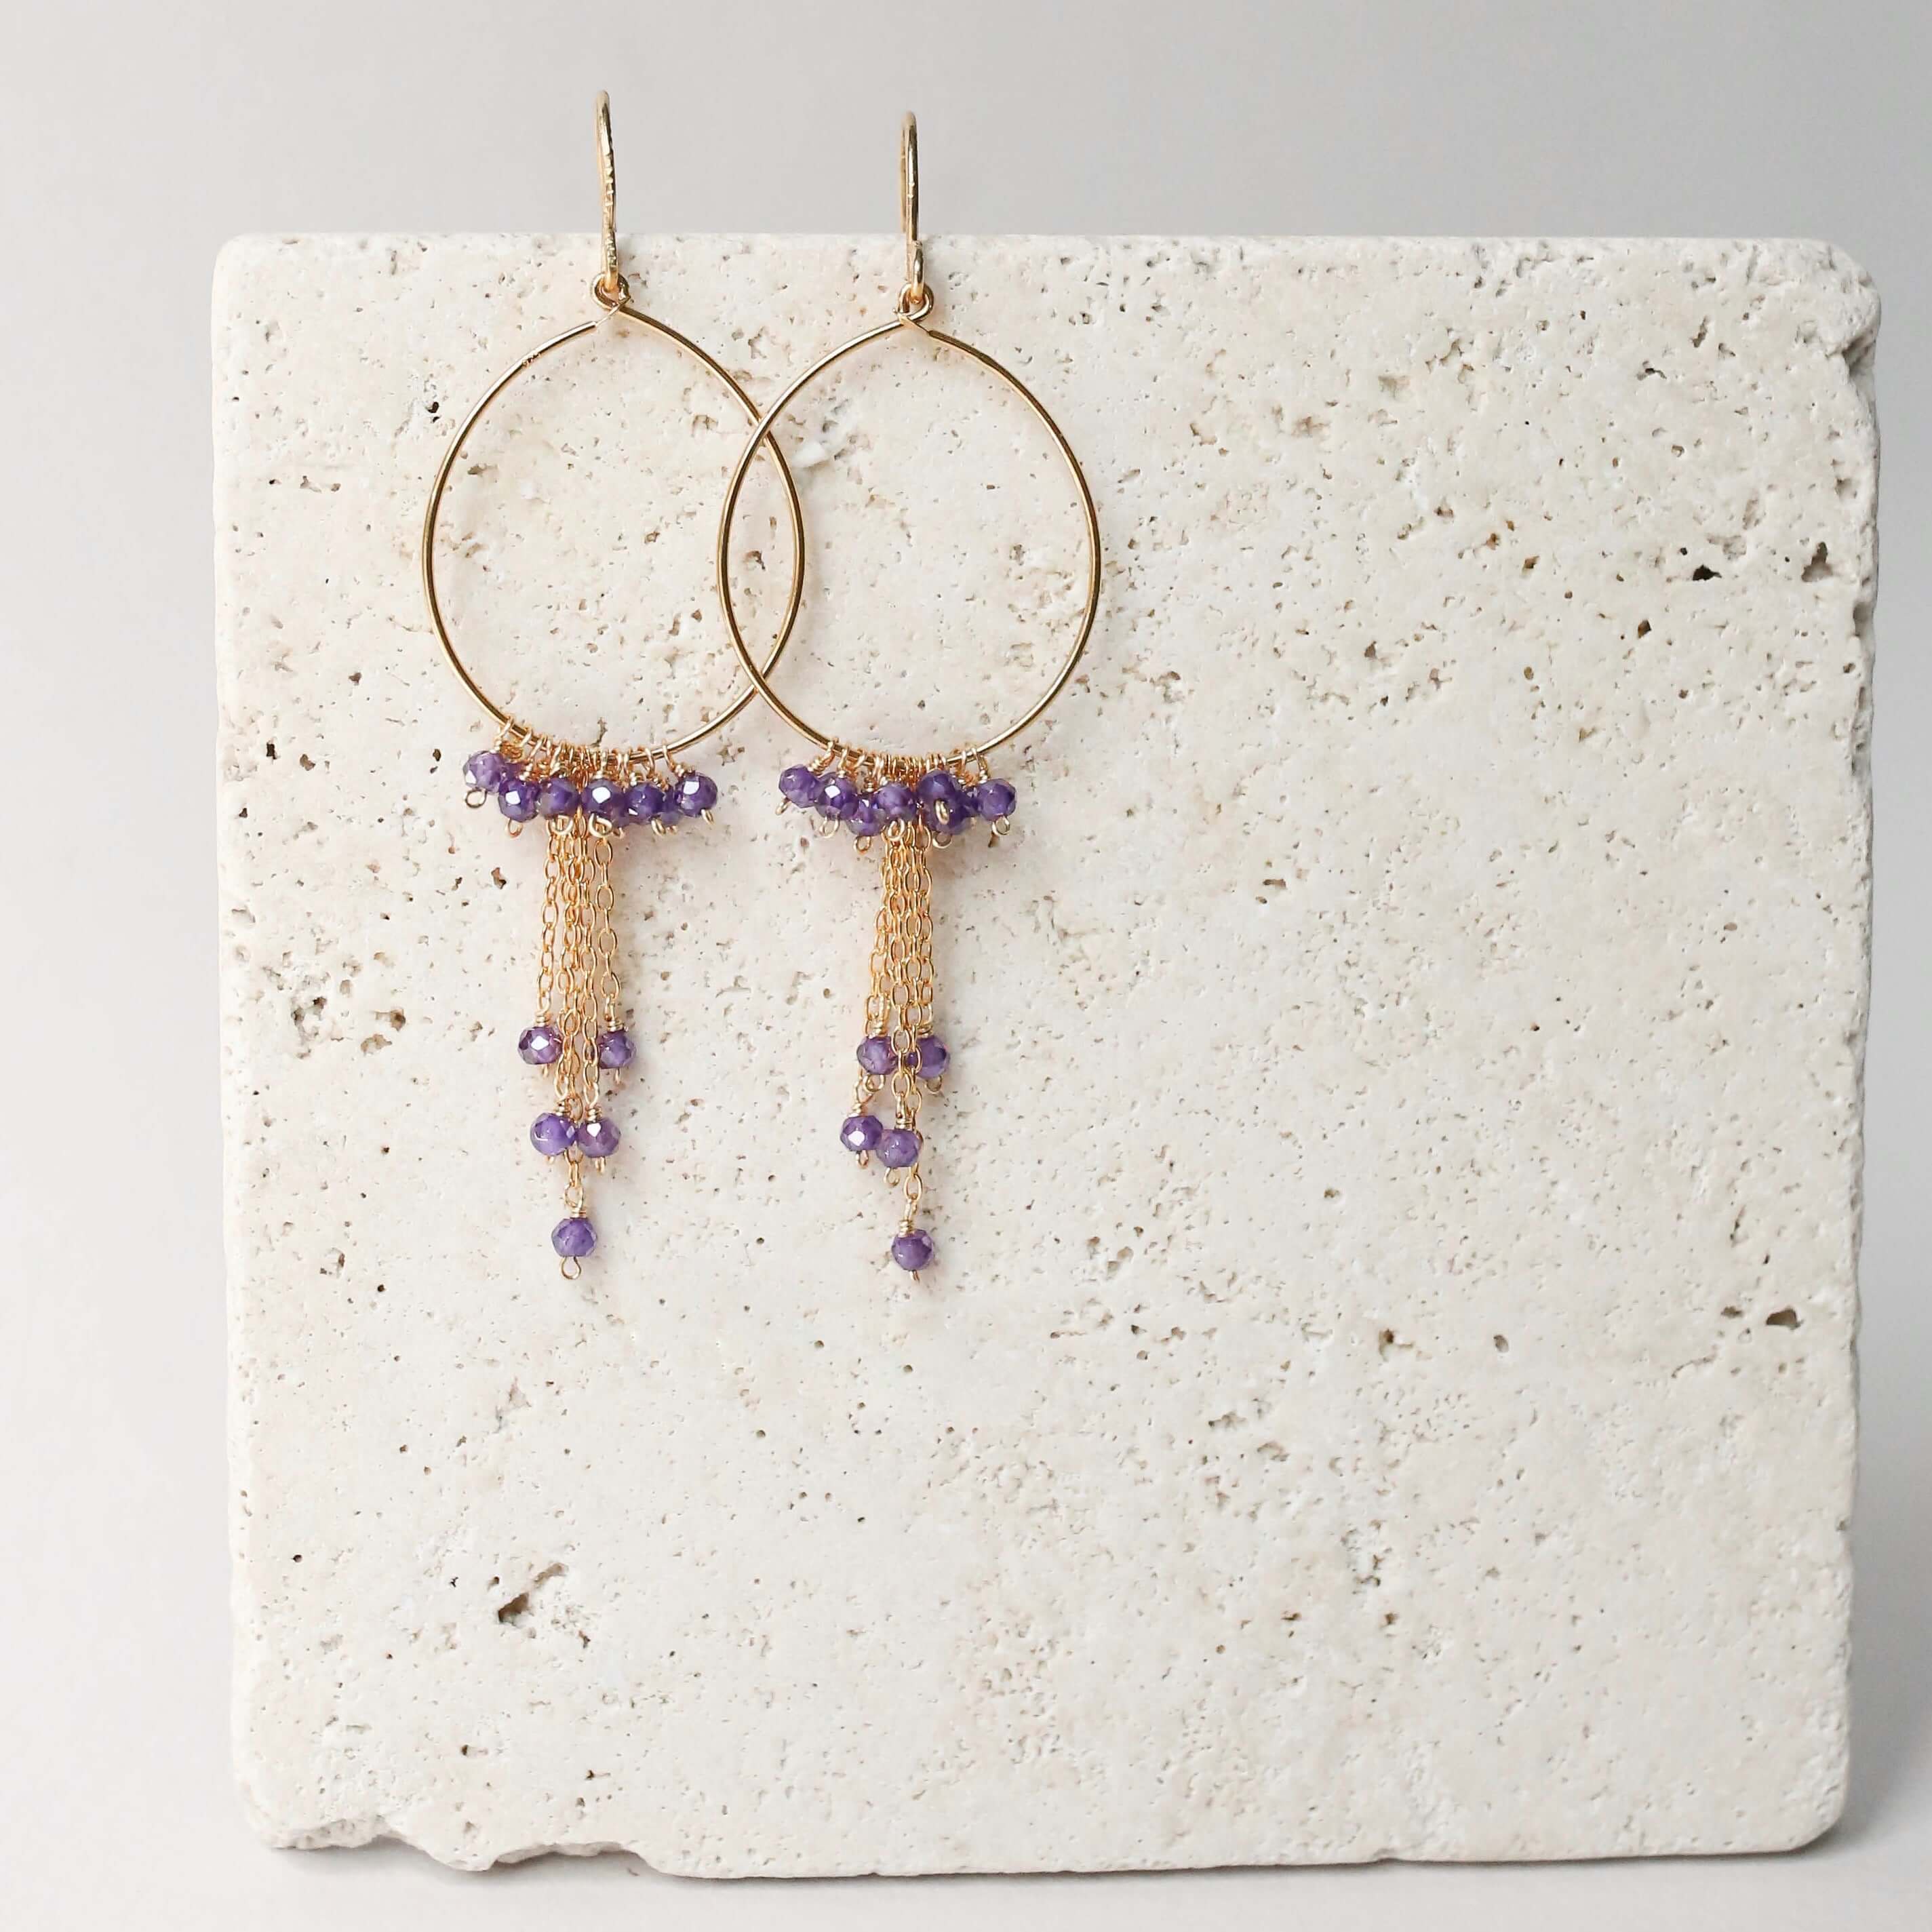 Artisan-Crafted Hoop Earrings with Amethyst Stones